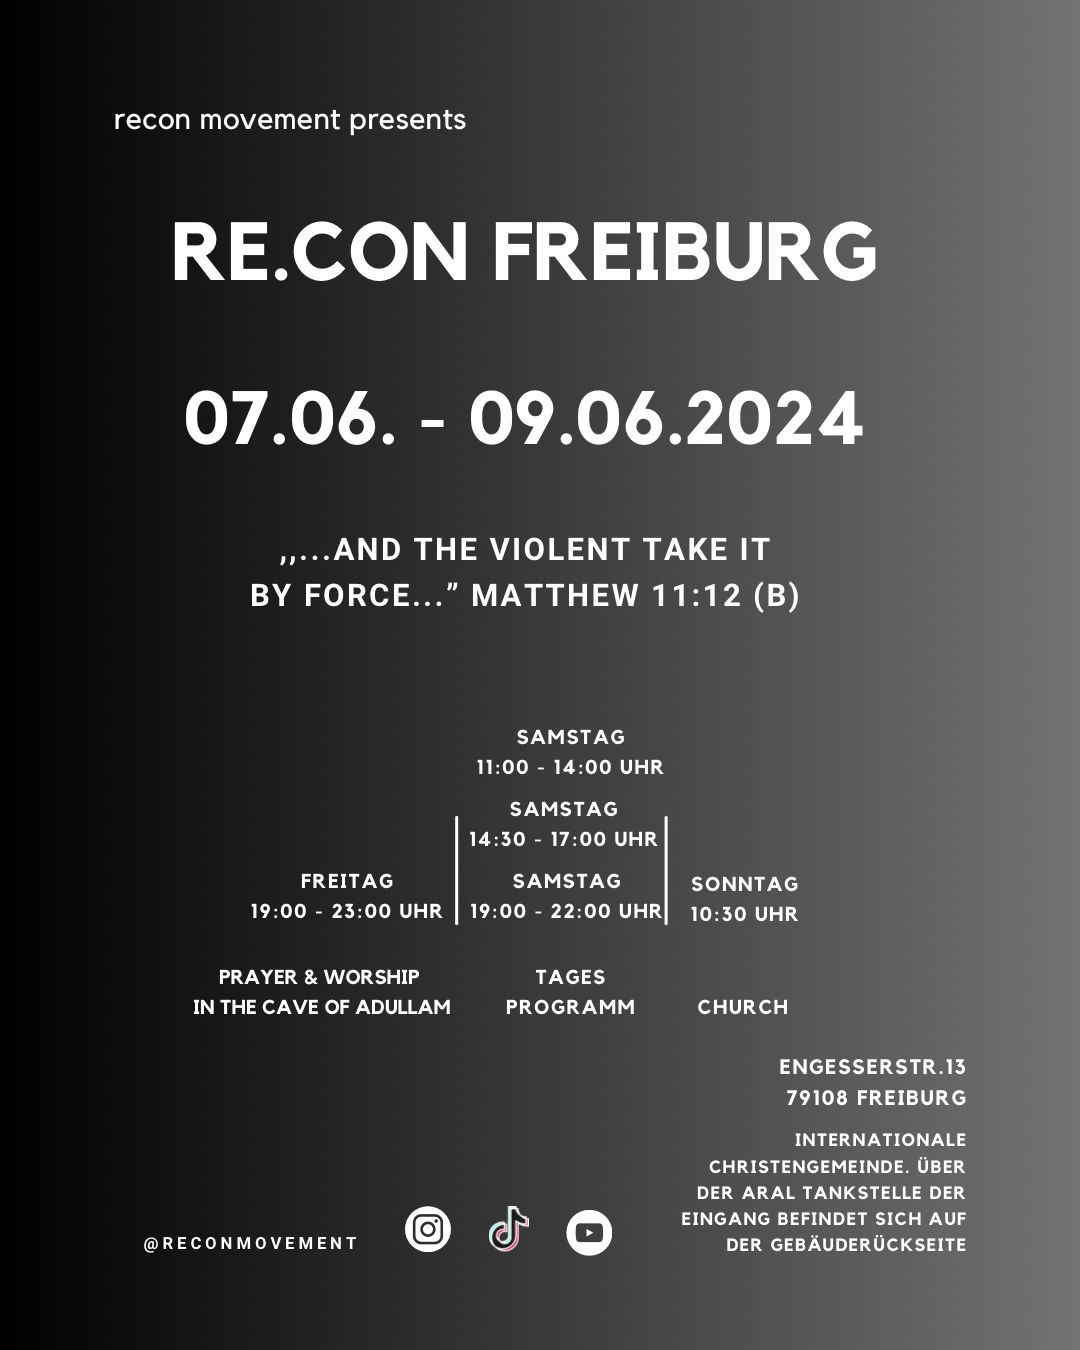 Re.Con Freiburg 2024